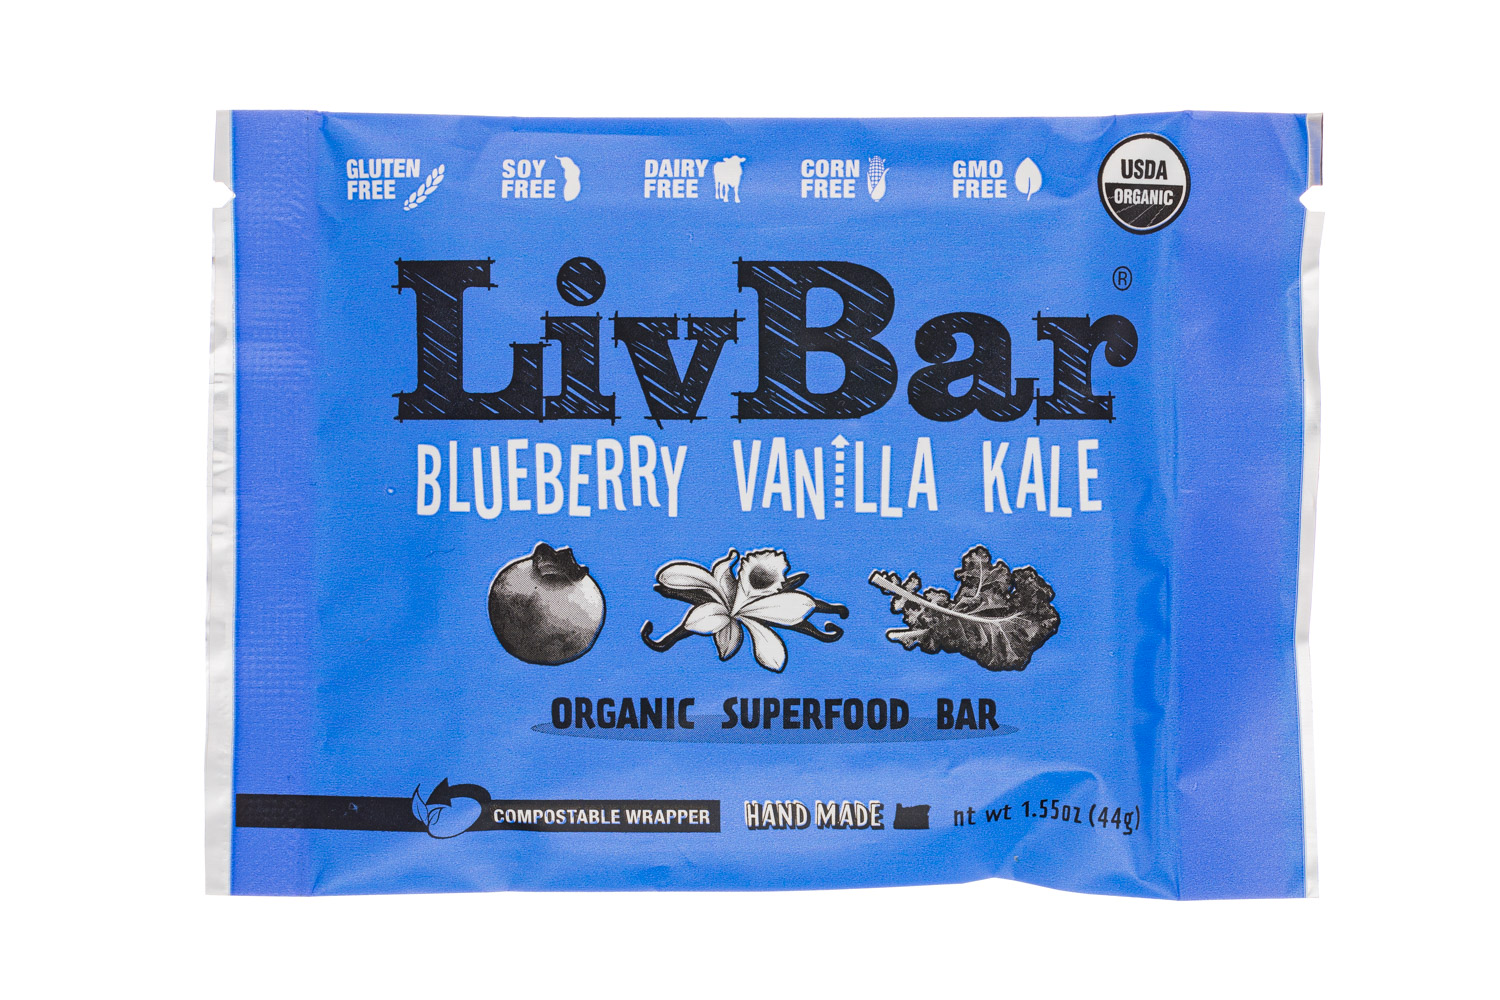 Blueberry Vanilla Kale